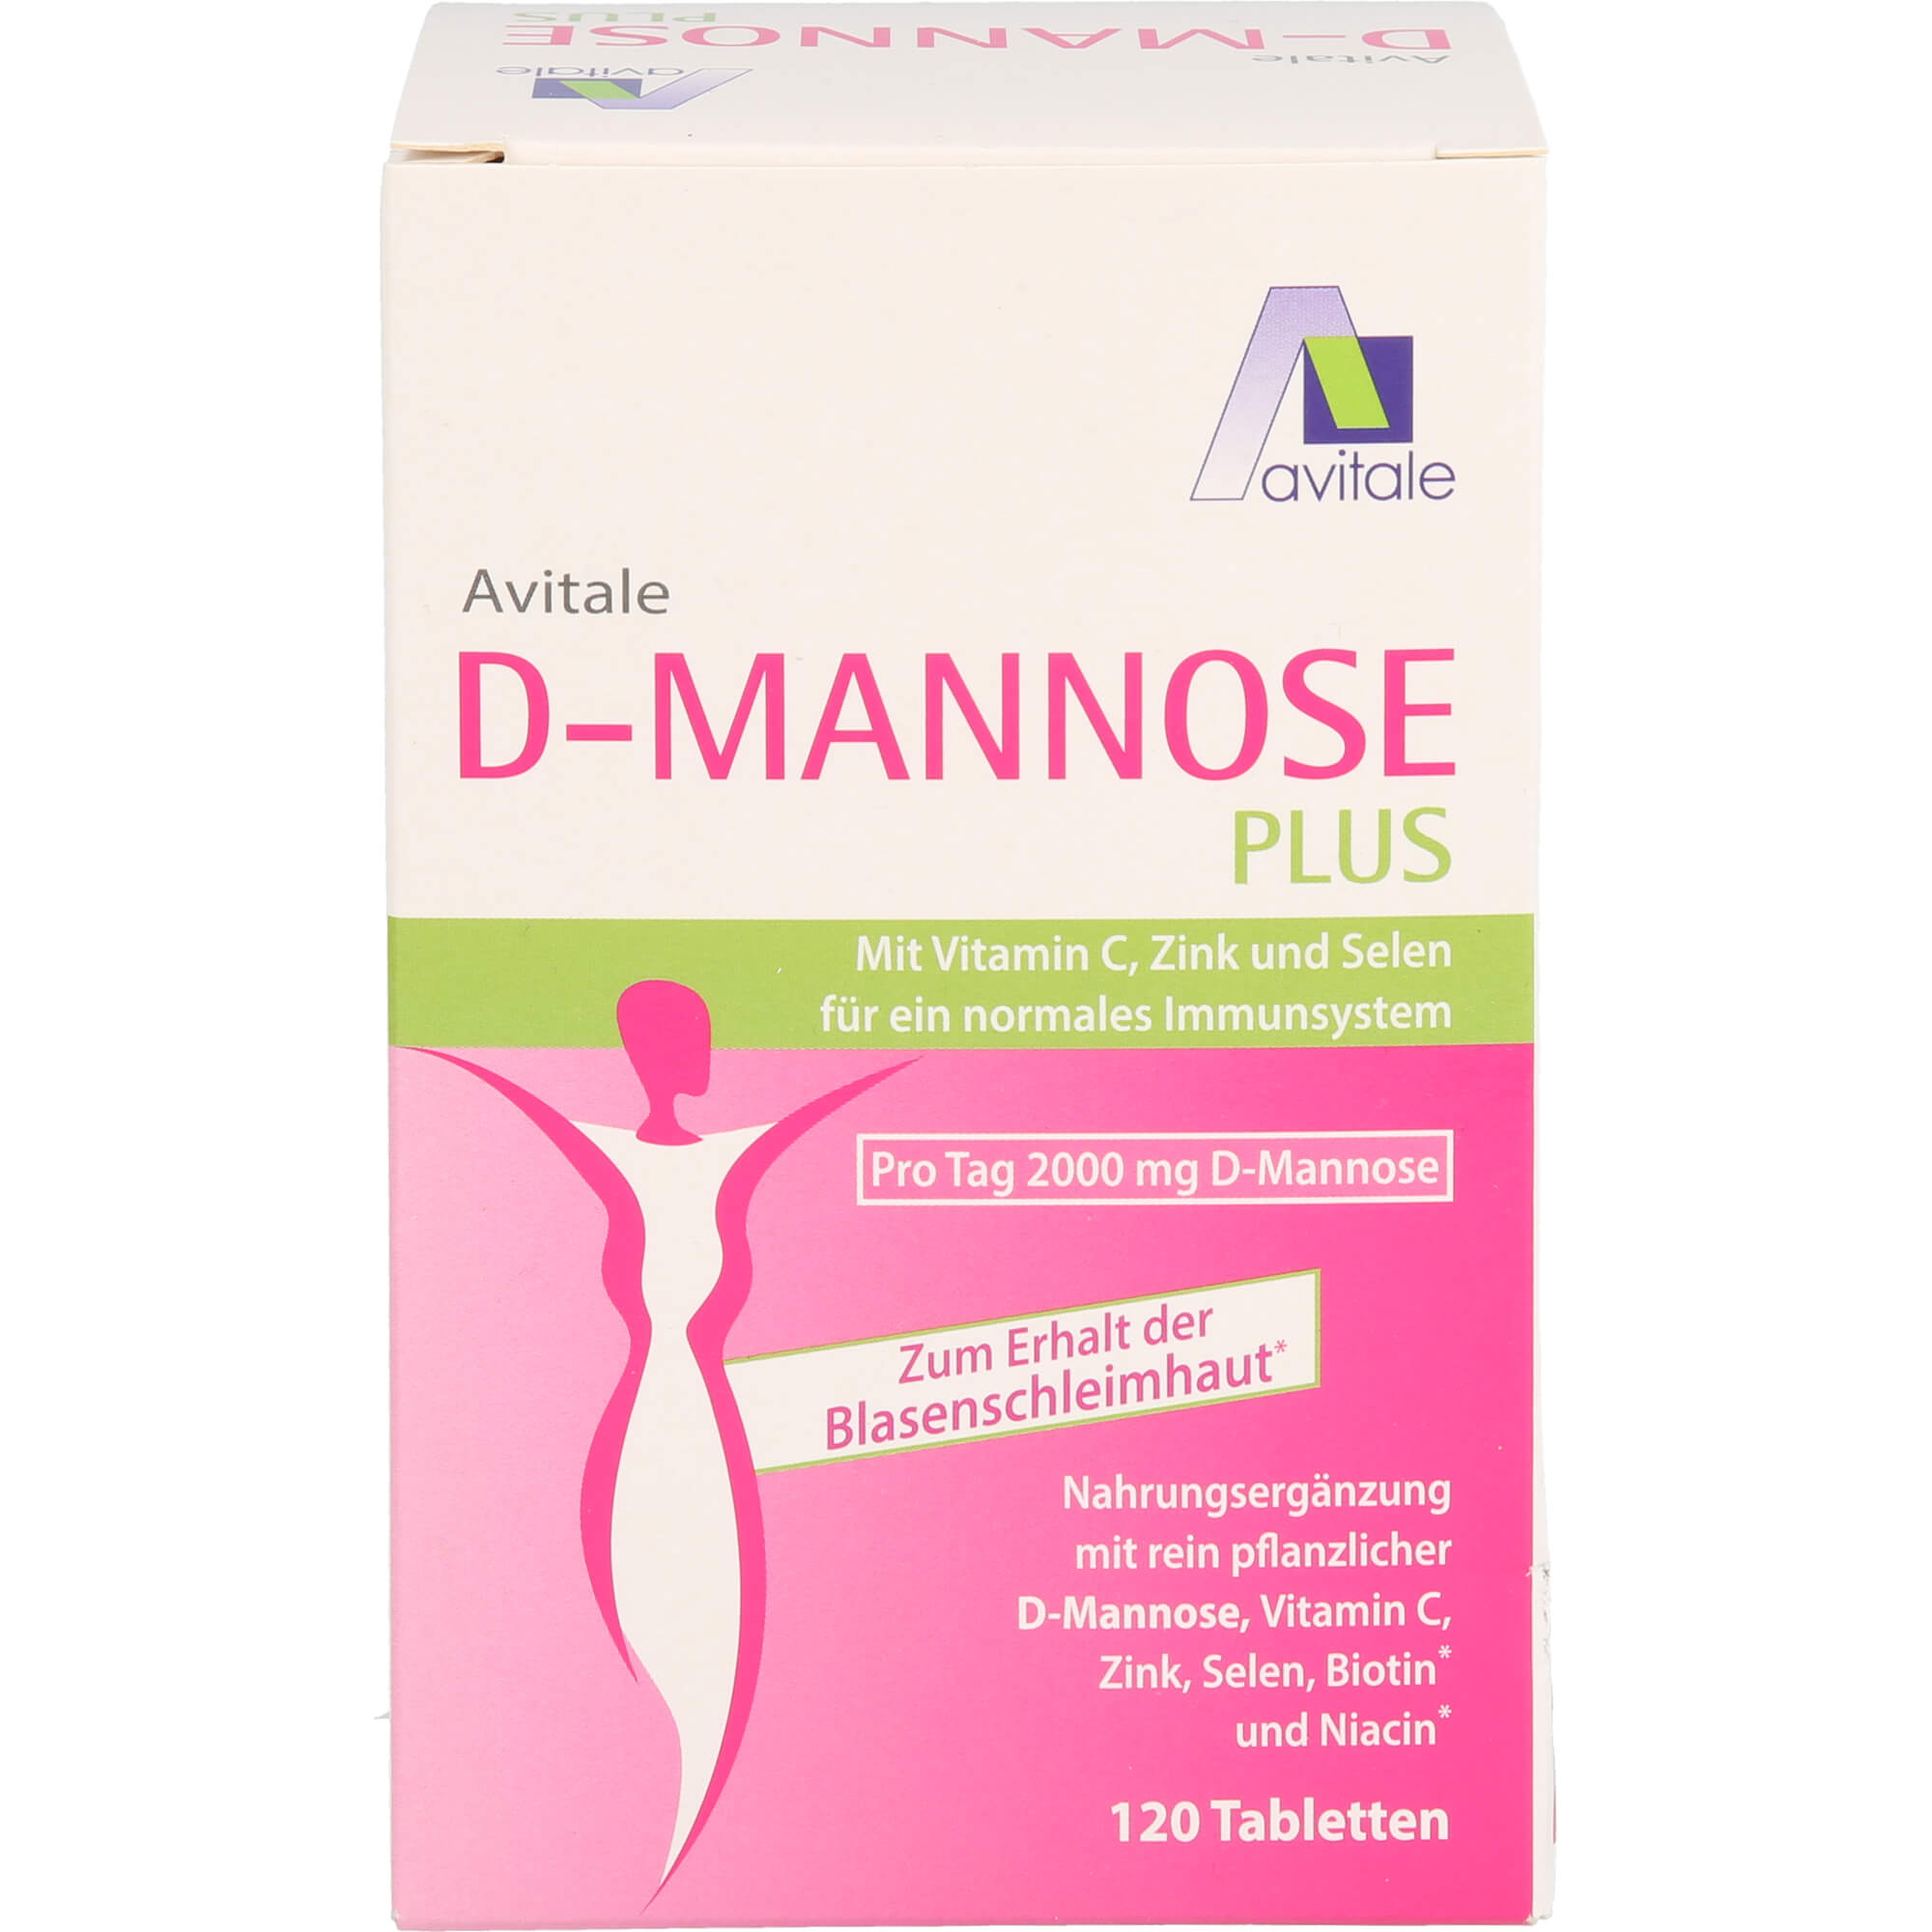 D-MANNOSE-PLUS-2000-mg-Tabl-m-Vit-u-Mineralstof